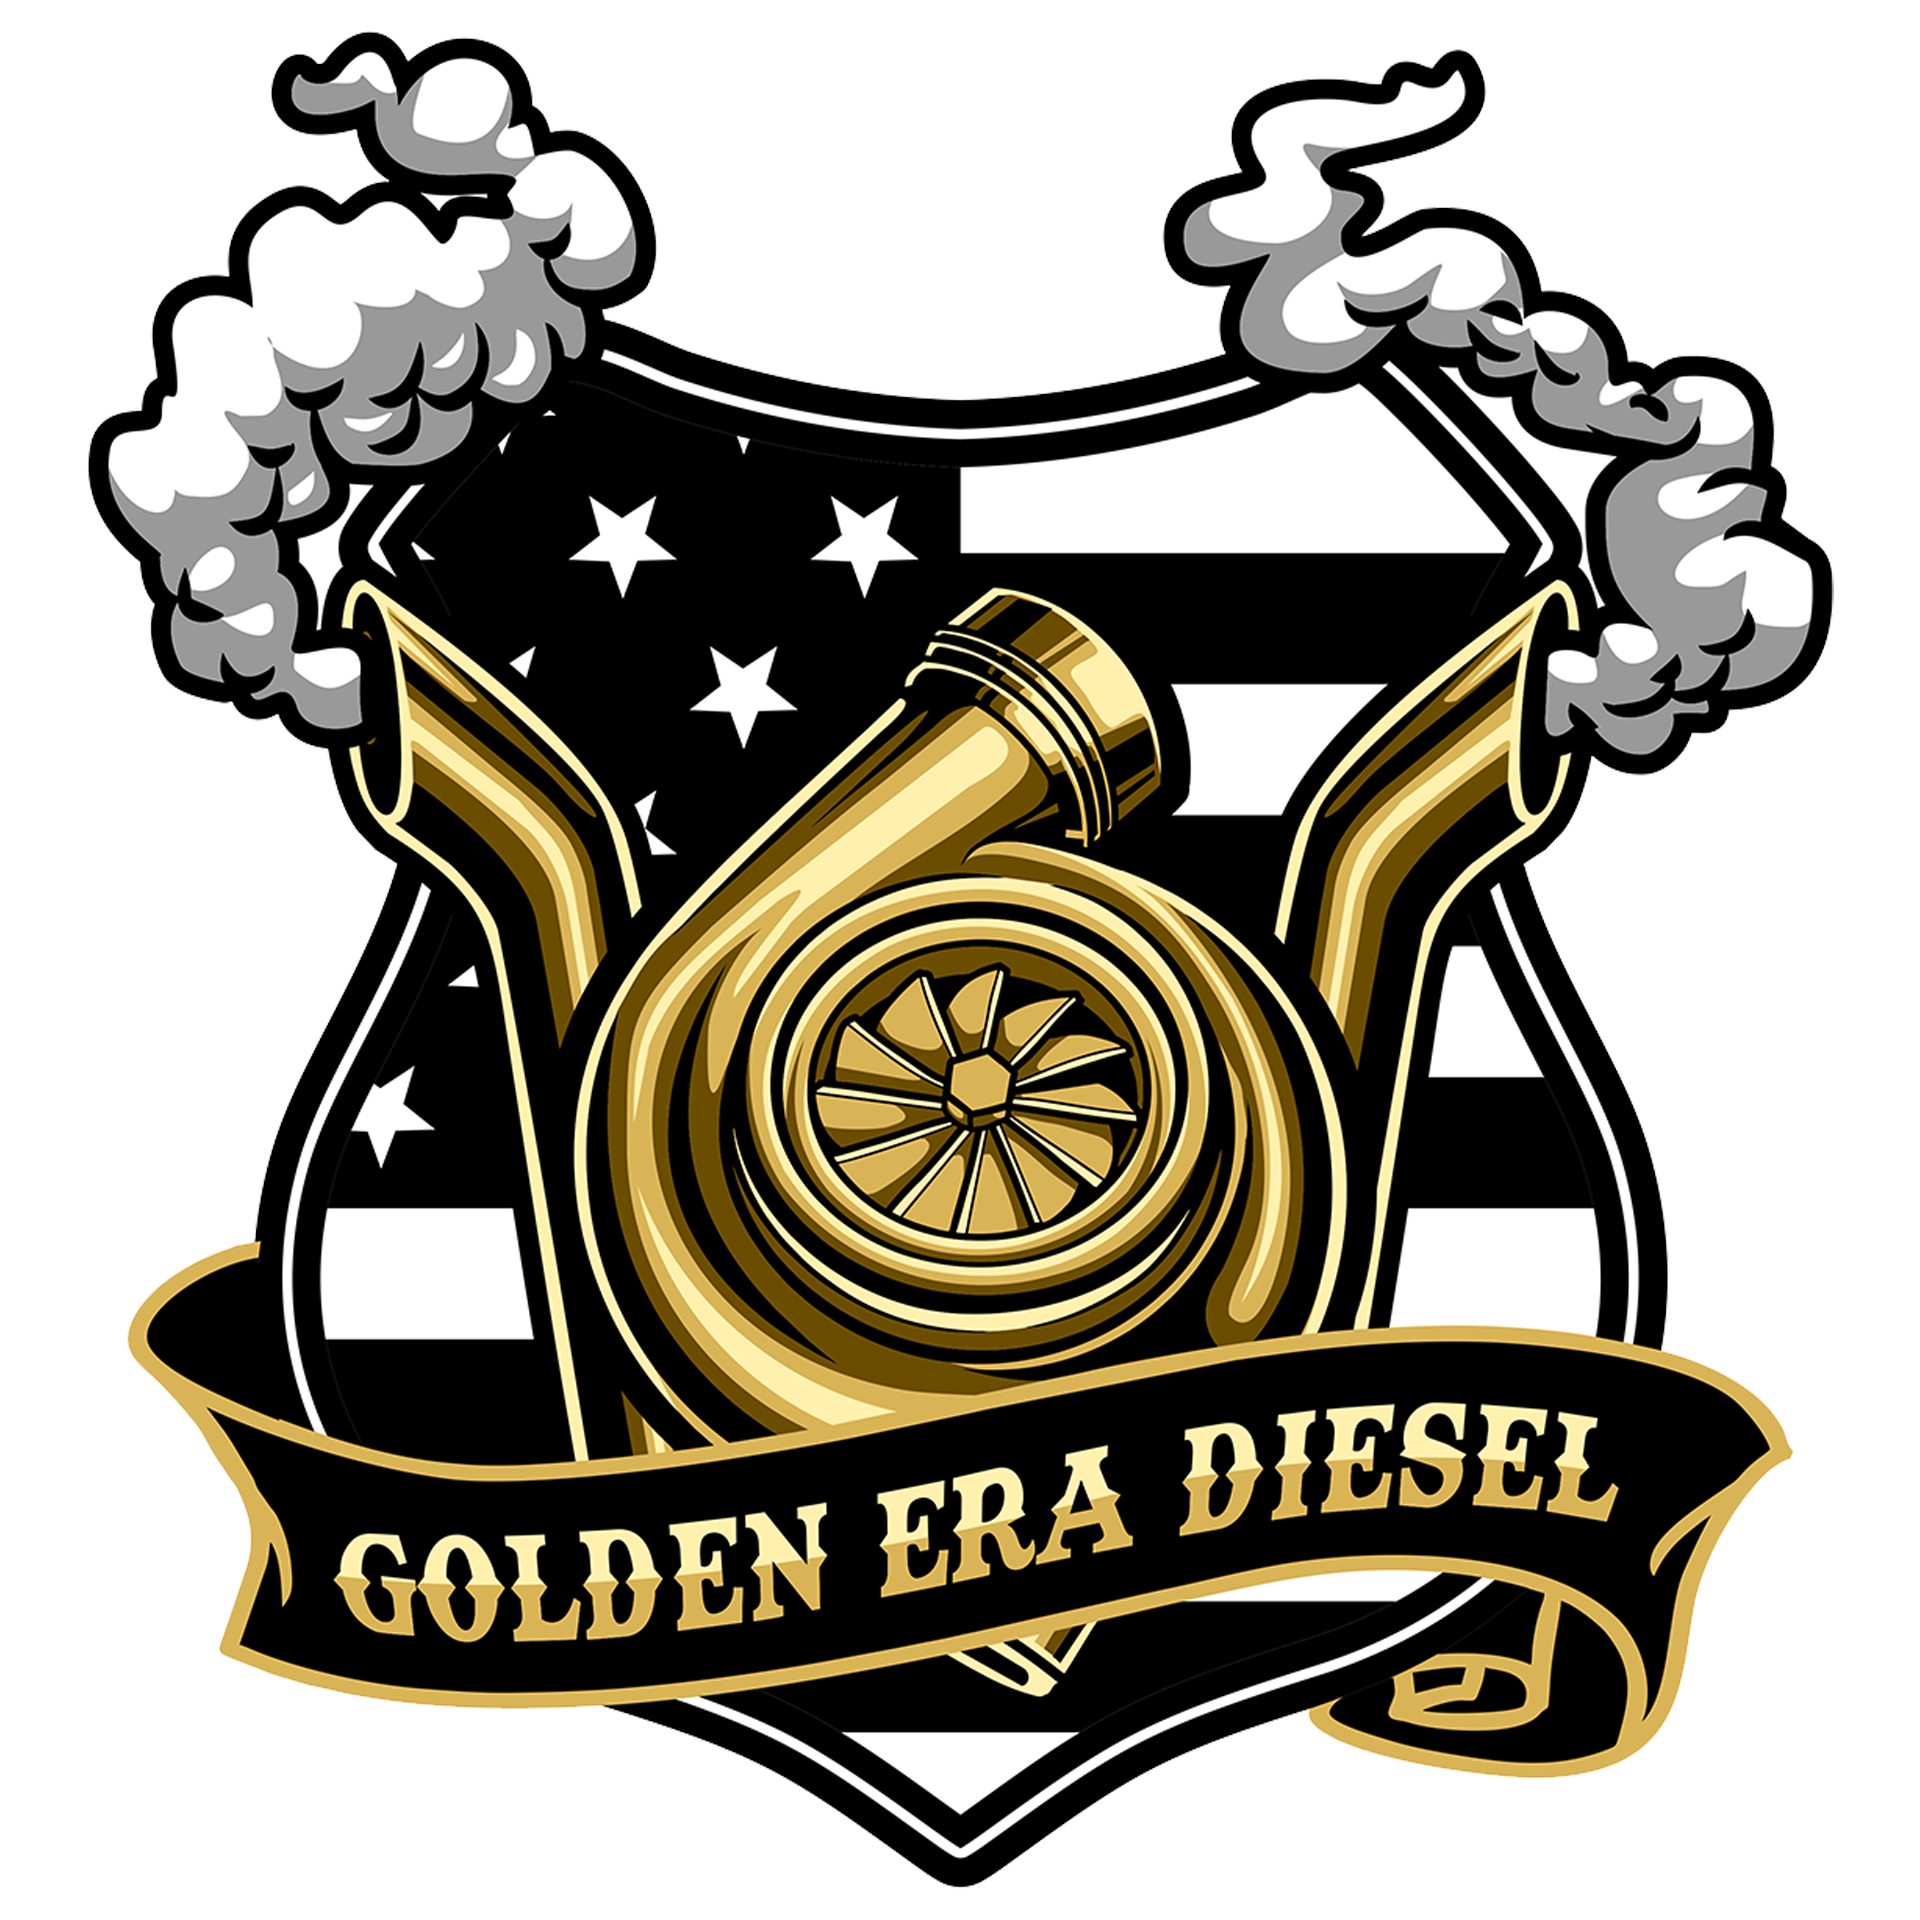 Golden Era Diesel